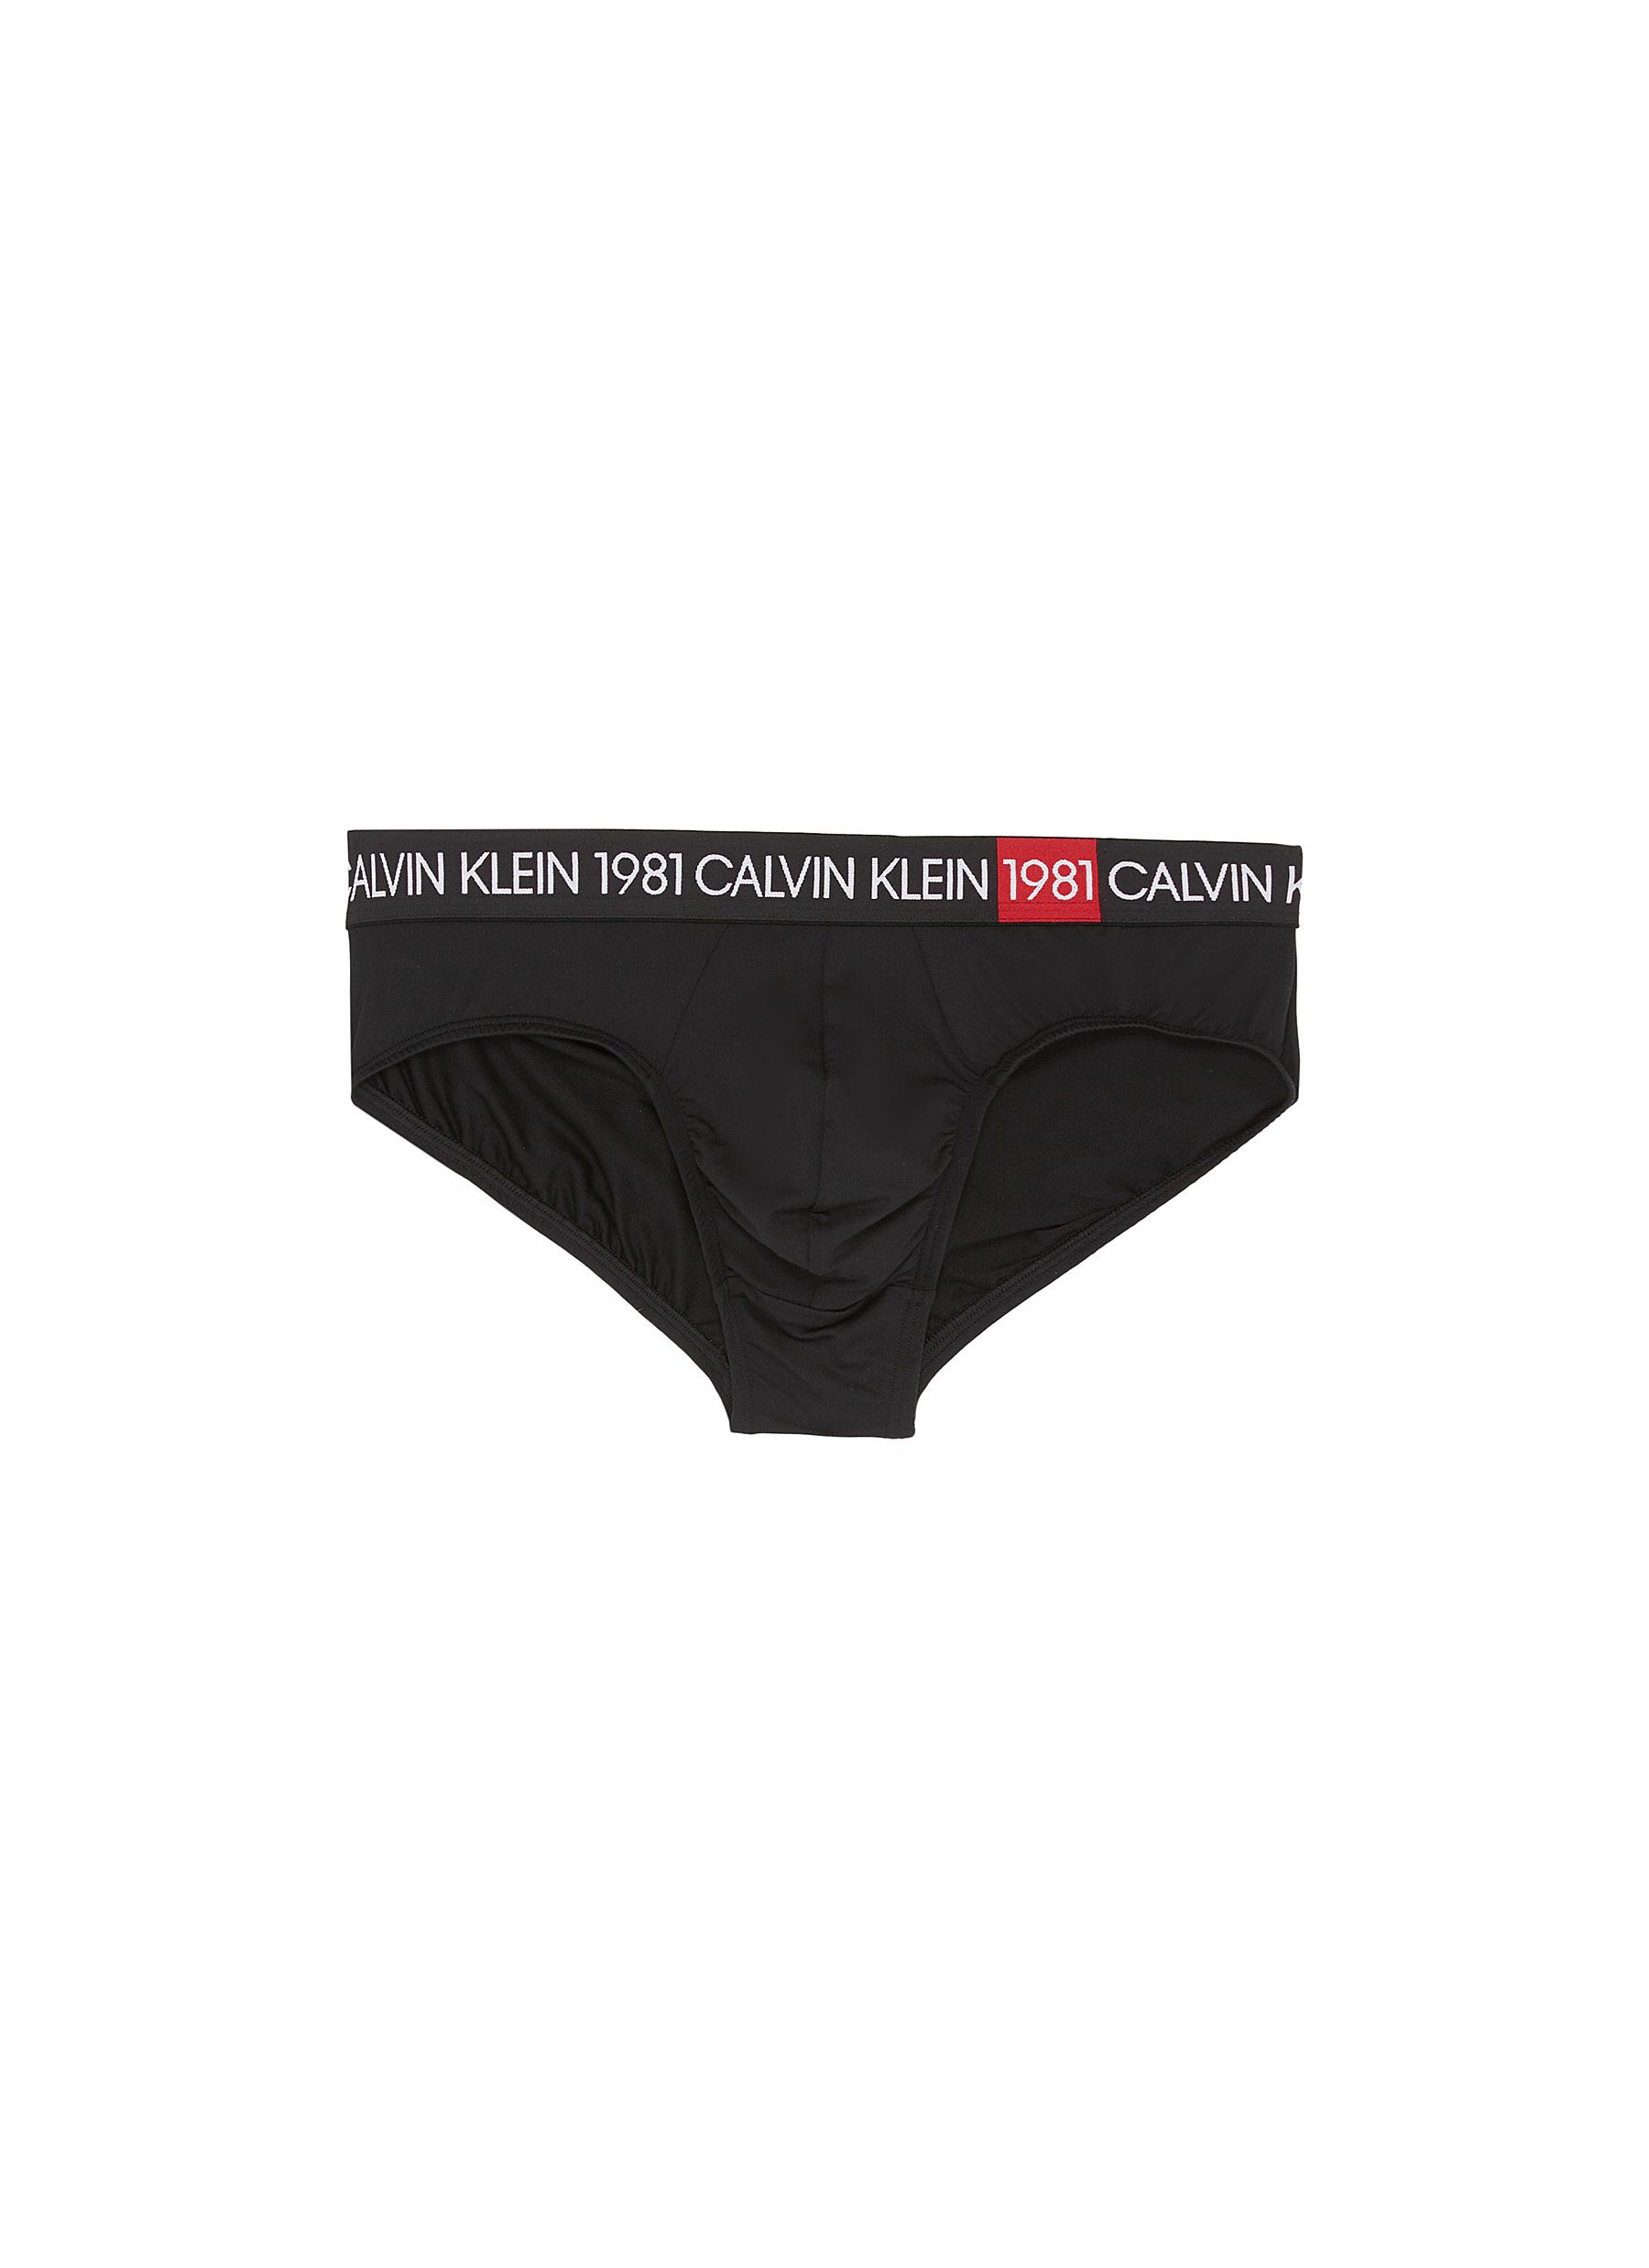 calvin klein underwear 1981